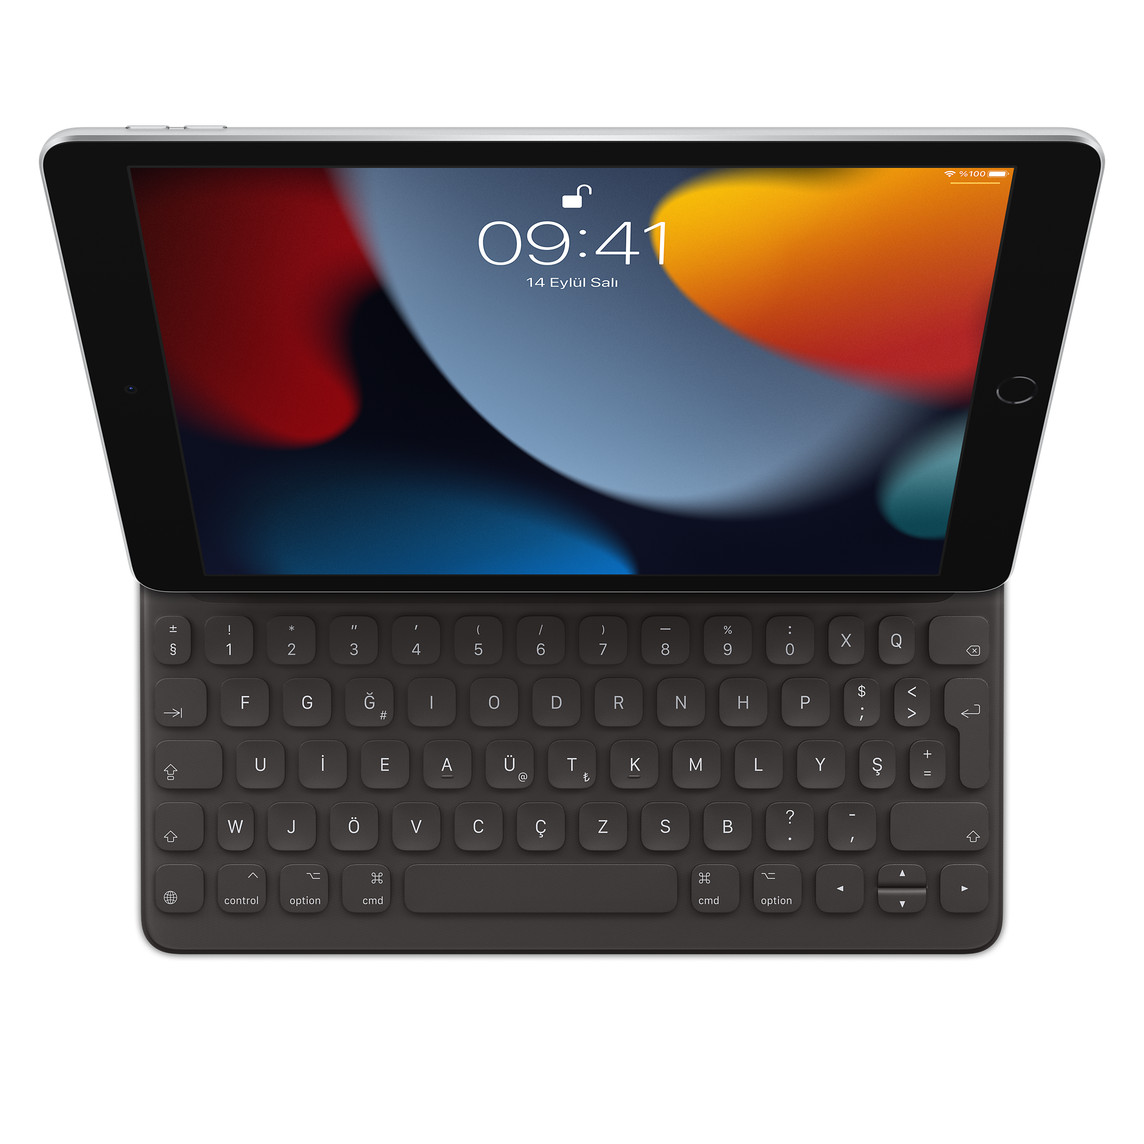 iPad’e takılı iPad (9. nesil) için Smart Keyboard’un yukarıdan görünümü.